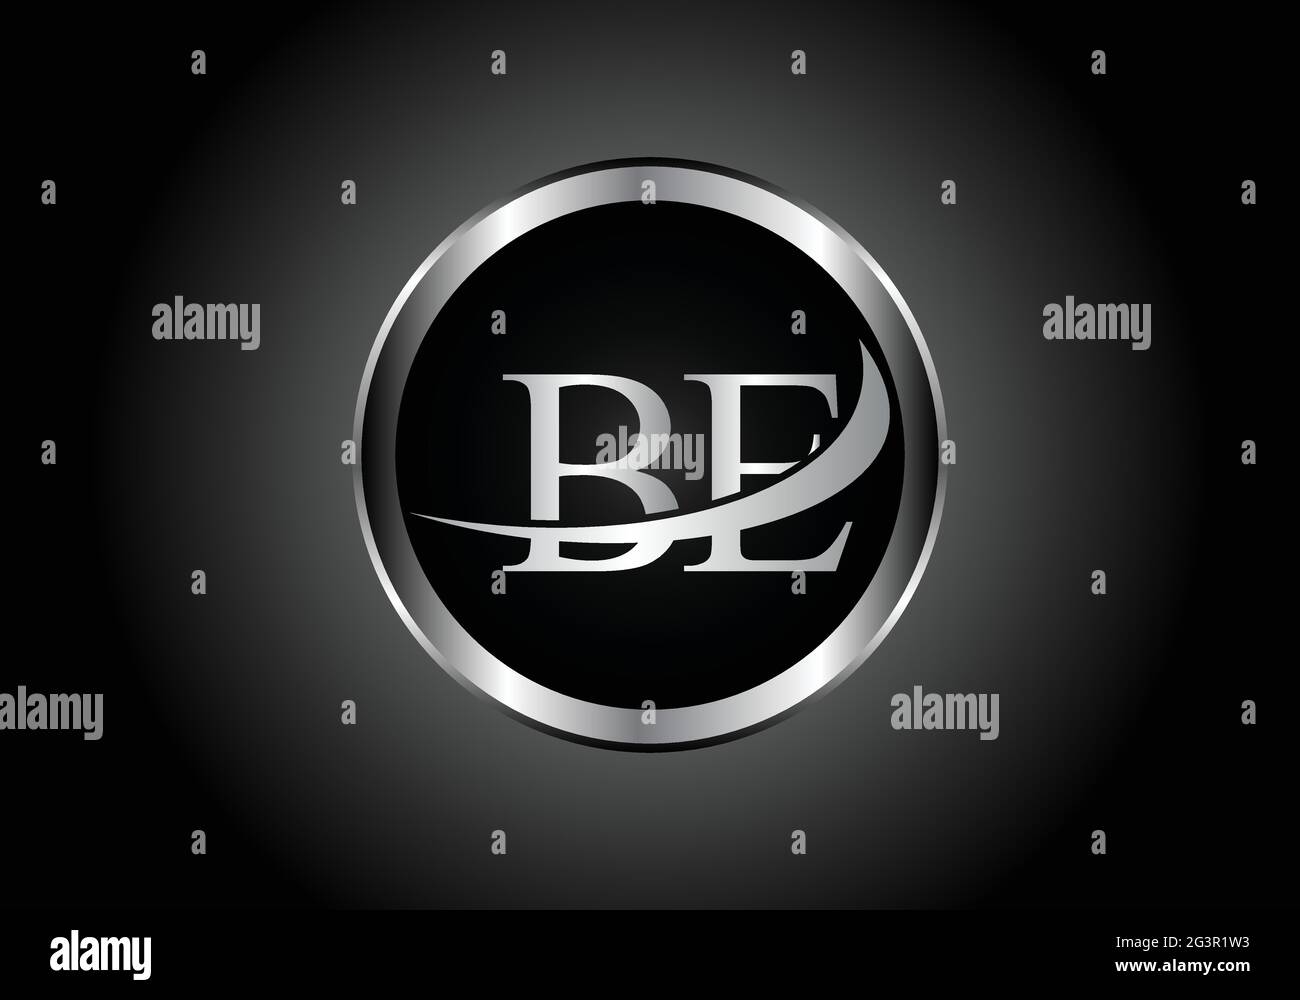 Silberner Buchstabe BE Metall-Kombination Alphabet Logo Symbol-Design mit grauer Farbe auf Schwarz-Weiß-Gradienten-Design für ein Unternehmen oder Unternehmen Stock Vektor